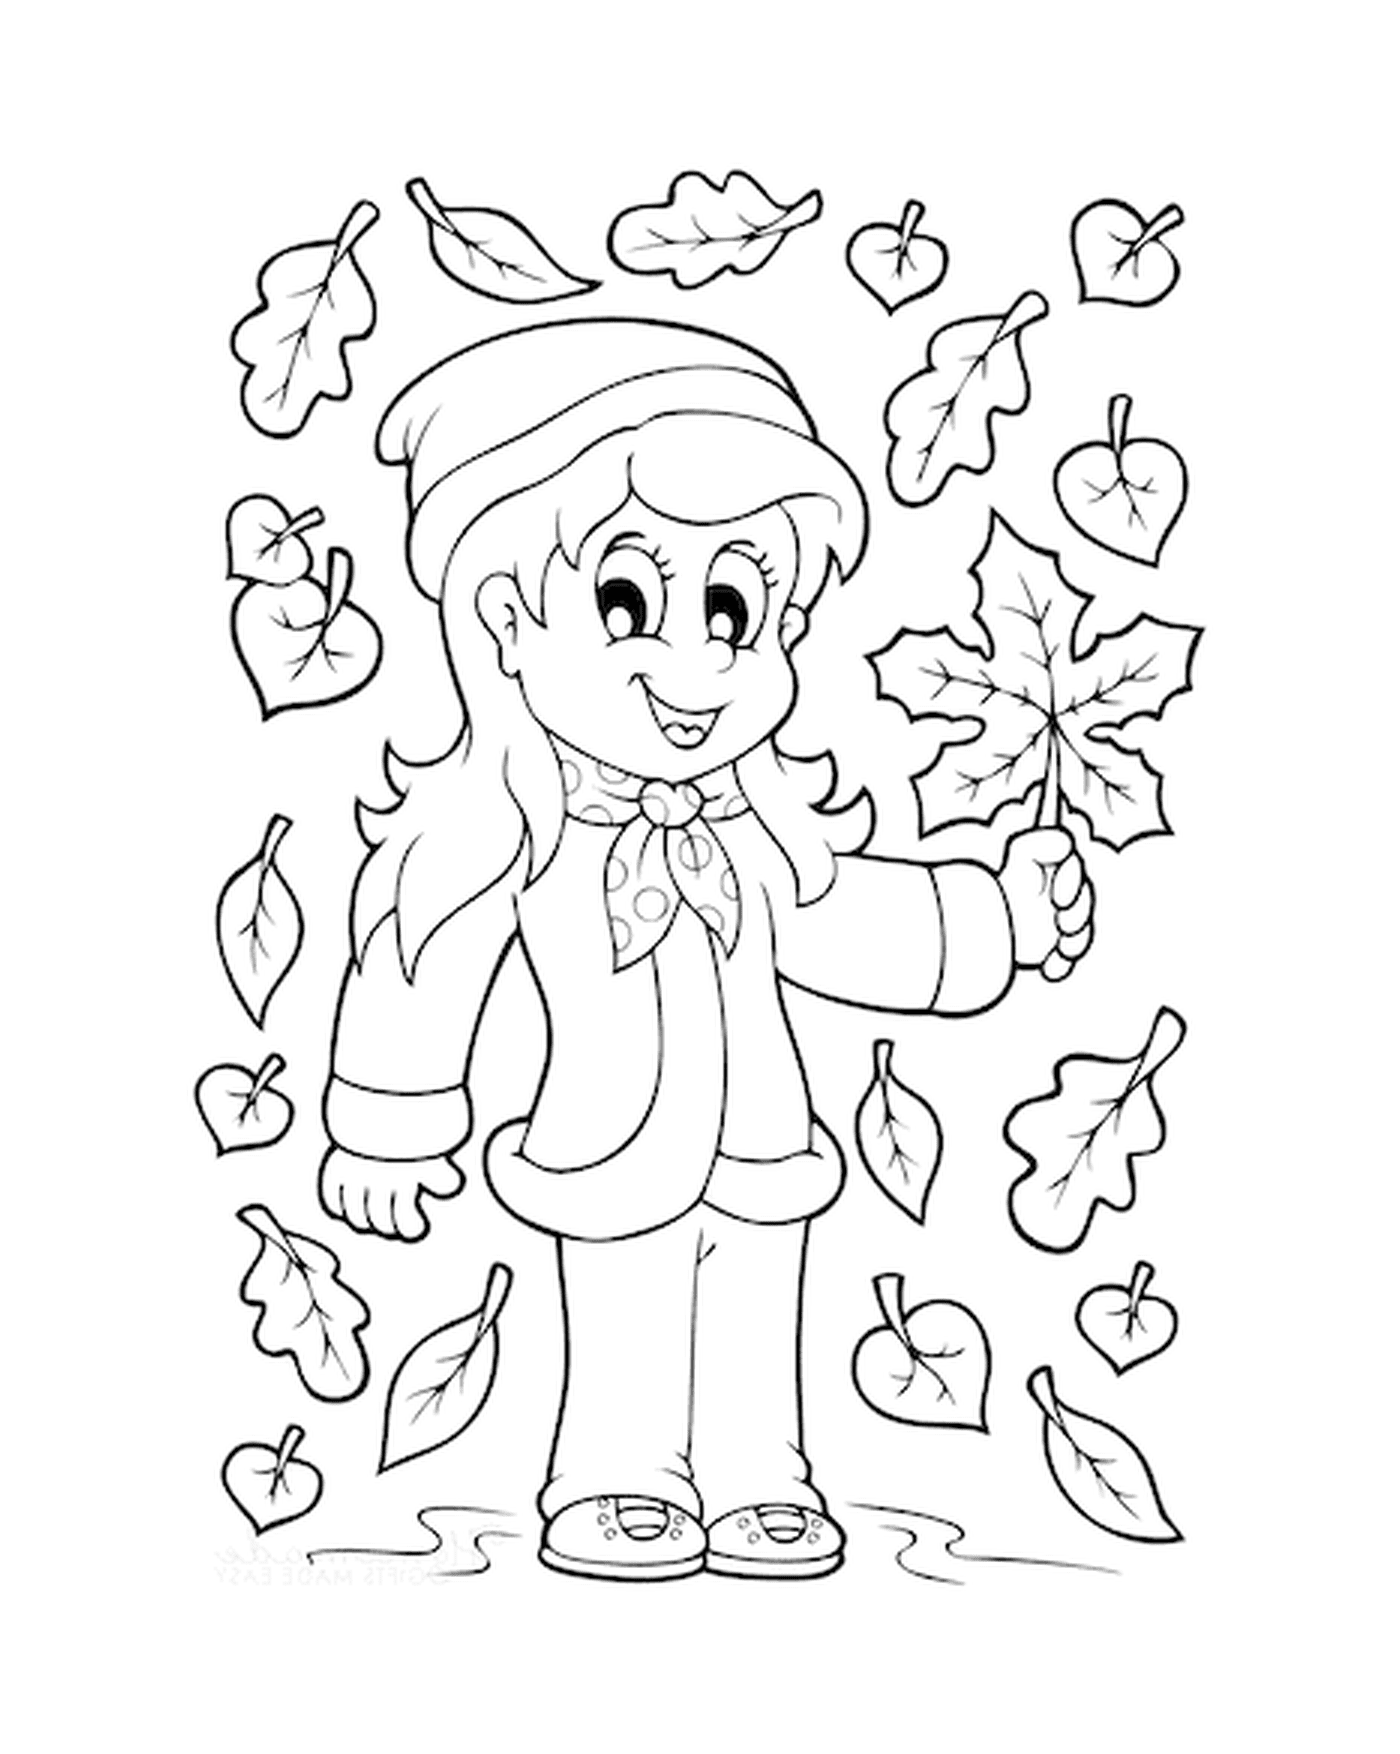  Chica sosteniendo una hoja de otoño de un árbol 